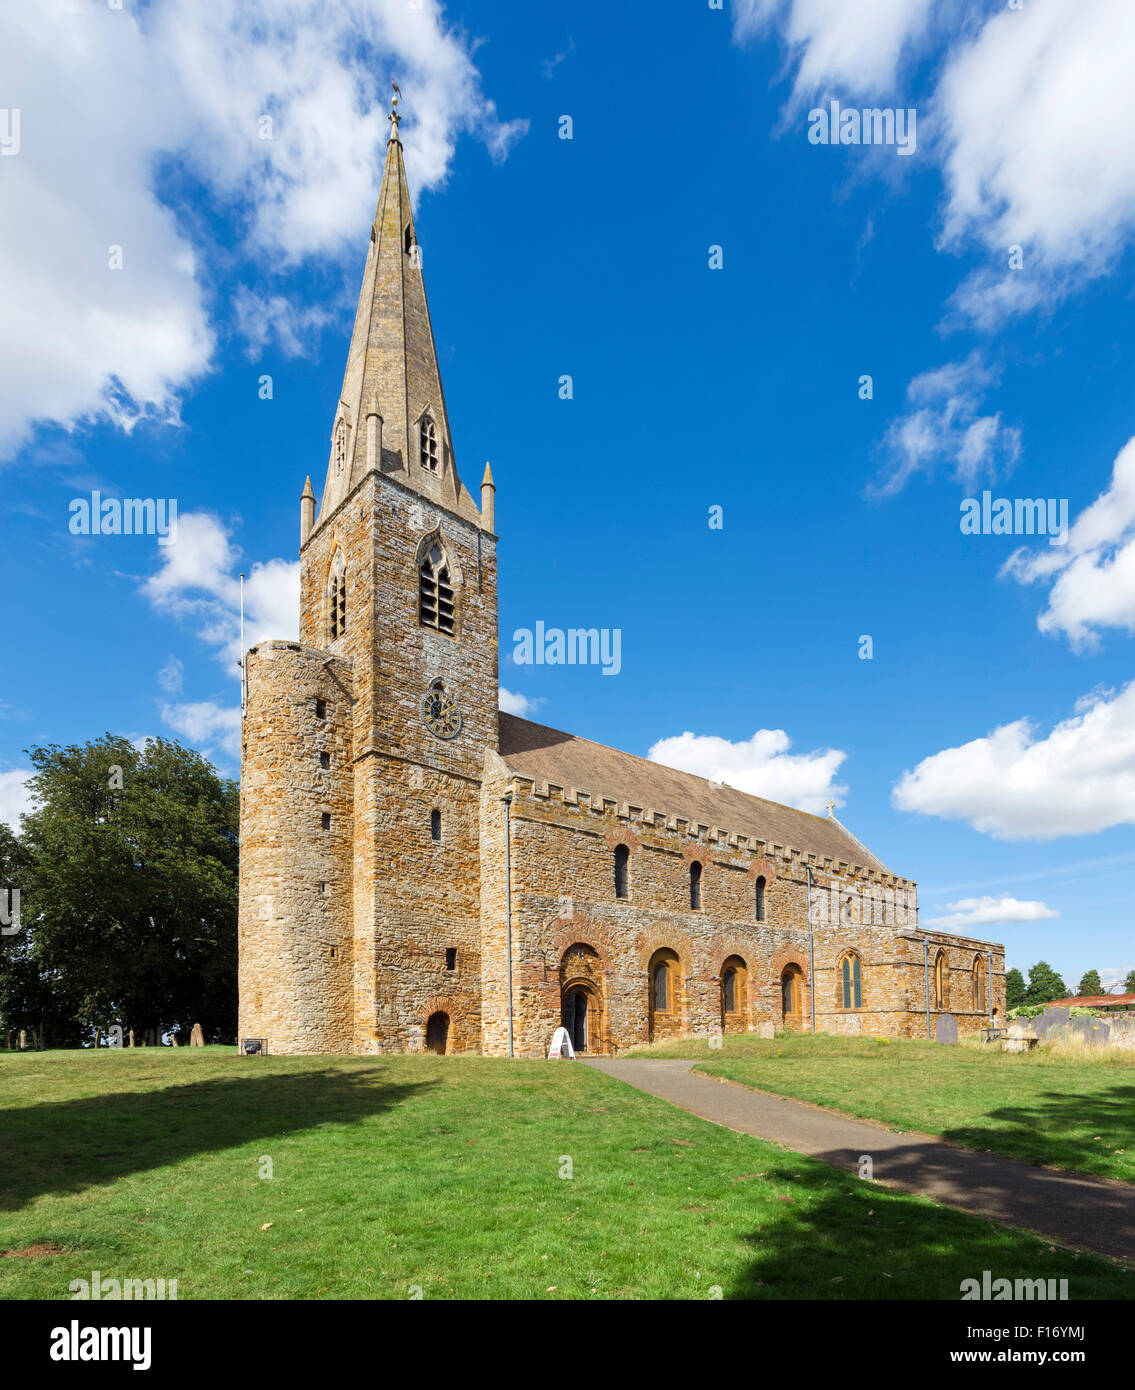 Église Brixworth. All Saints Church, l'une des plus anciennes églises anglo-saxonnes du pays, datant d'environ 690 après J.-C., Brixworth, Northants, Royaume-Uni Banque D'Images